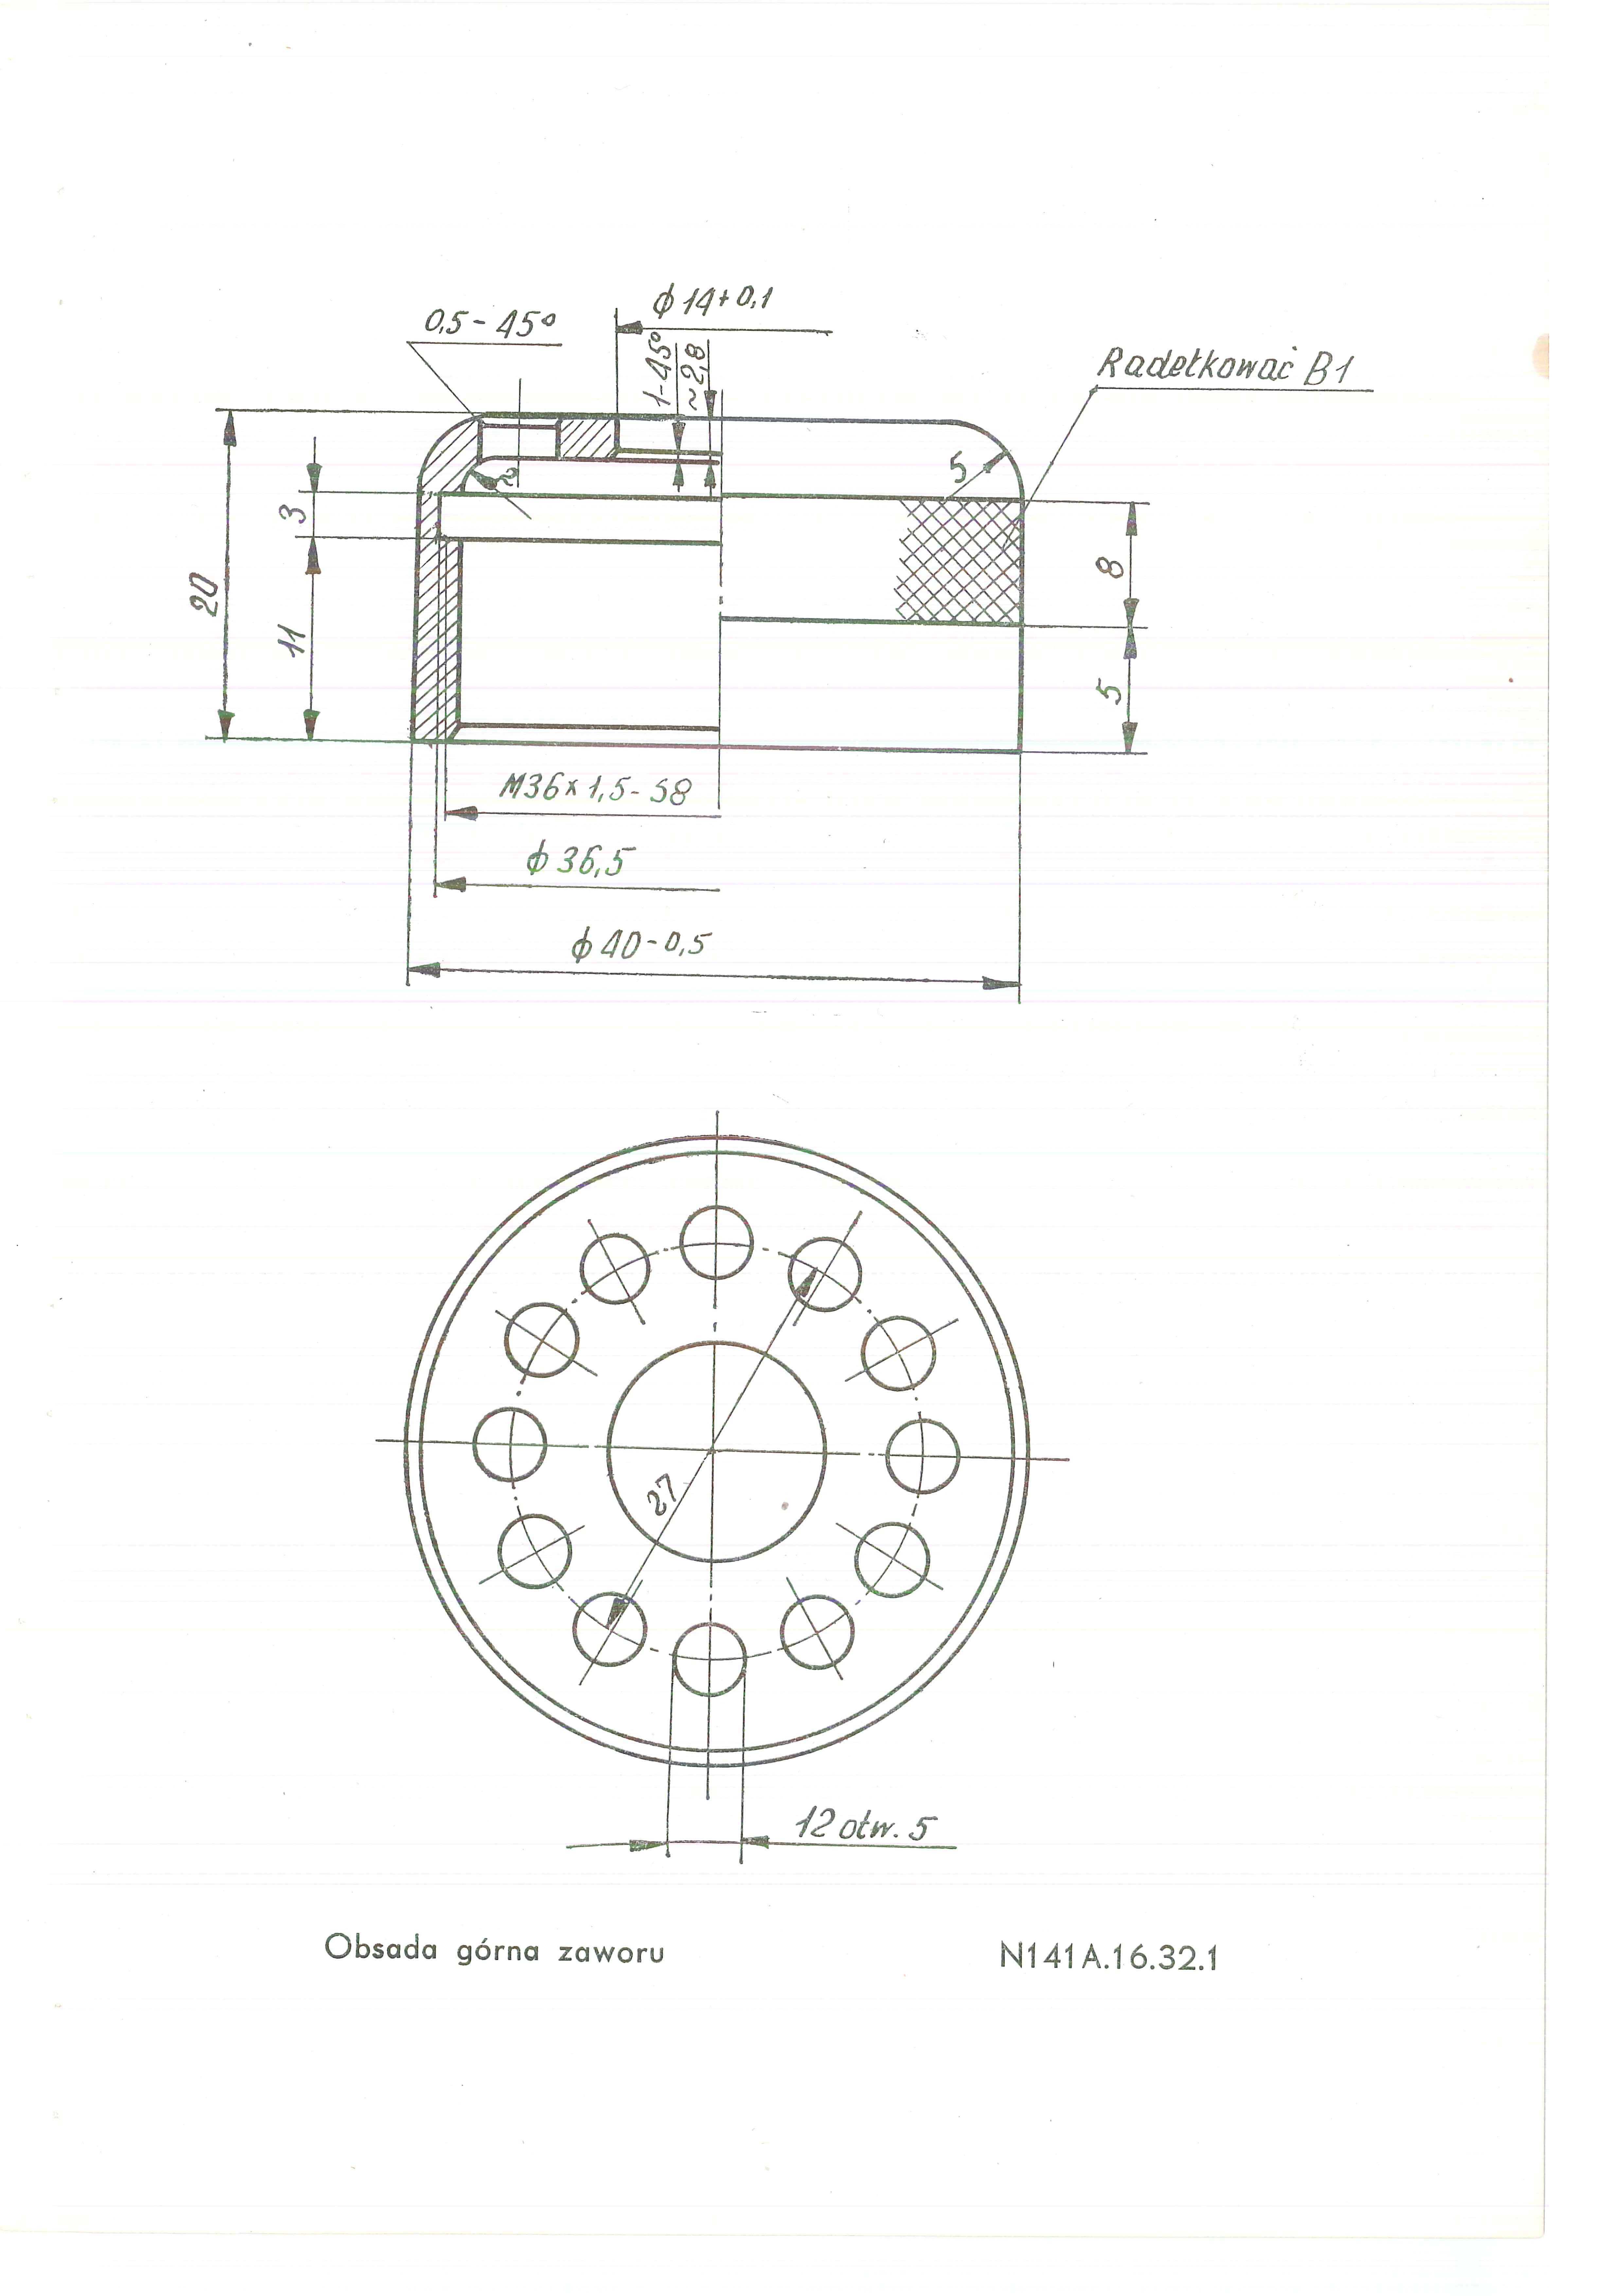 Instrukcja użytkowania kuchni polowej KP-340 1968.03.23 - 20120810060517298_0005.jpg